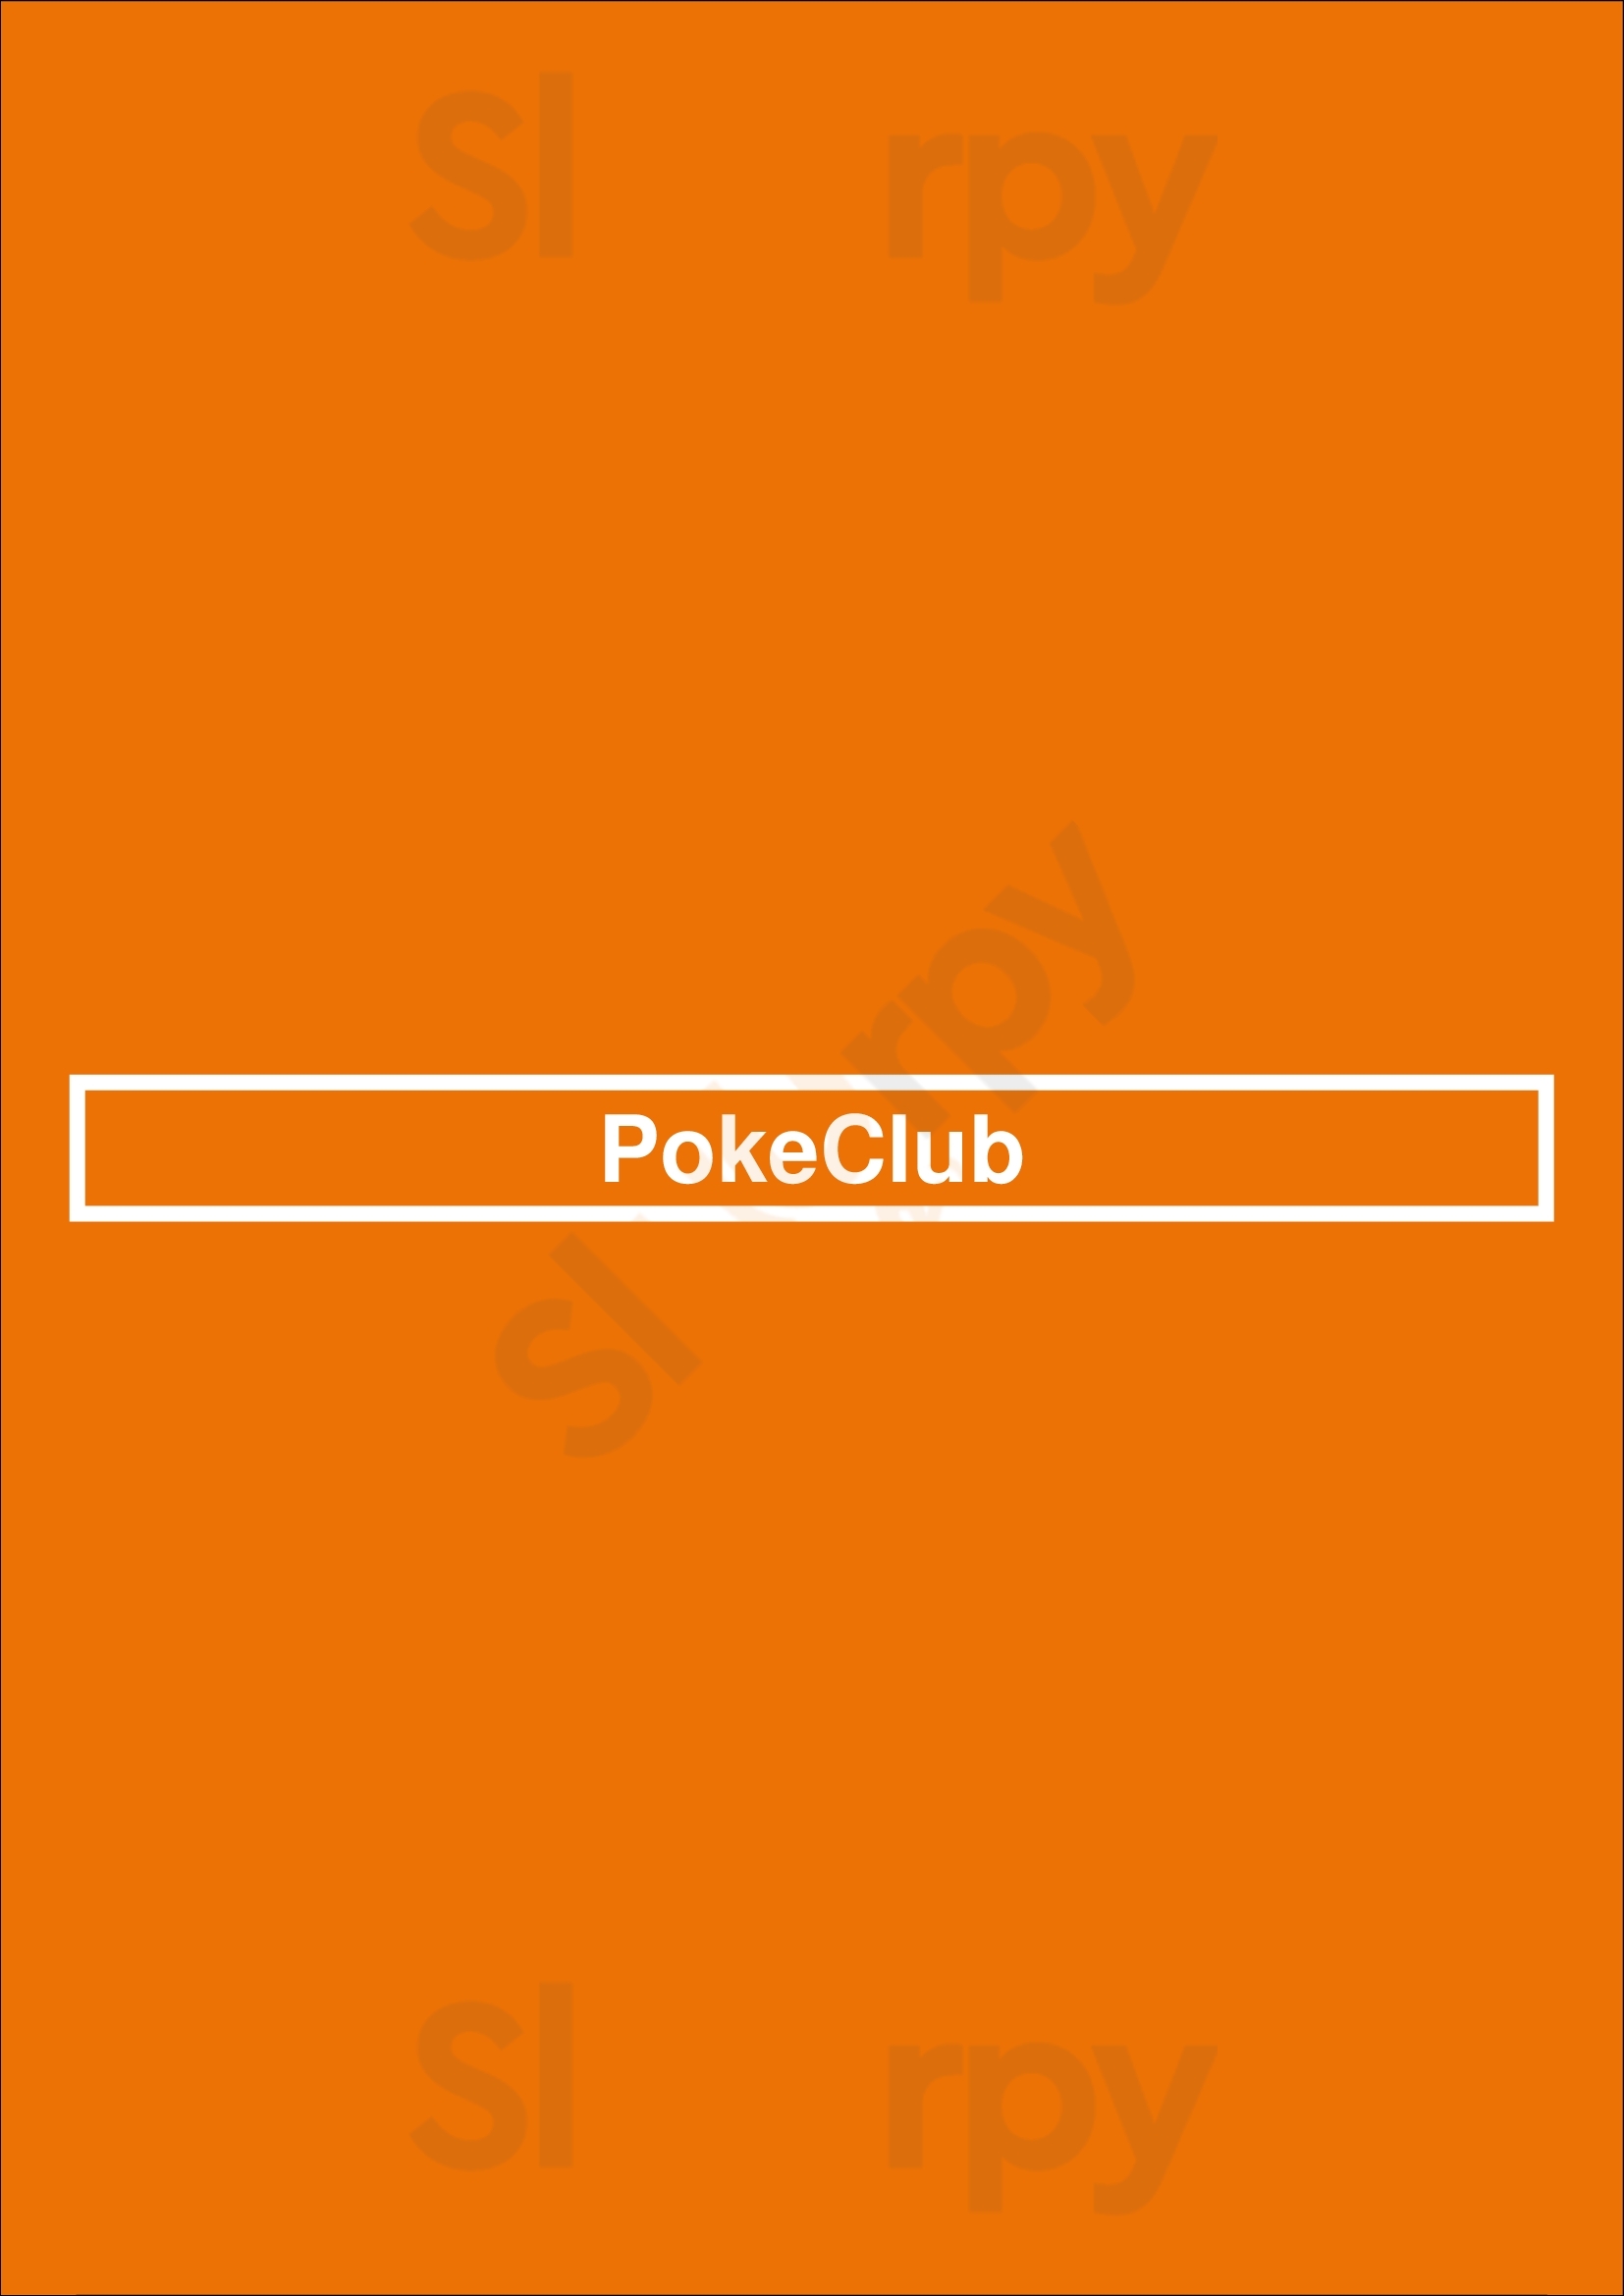 Pokeclub Denver Menu - 1